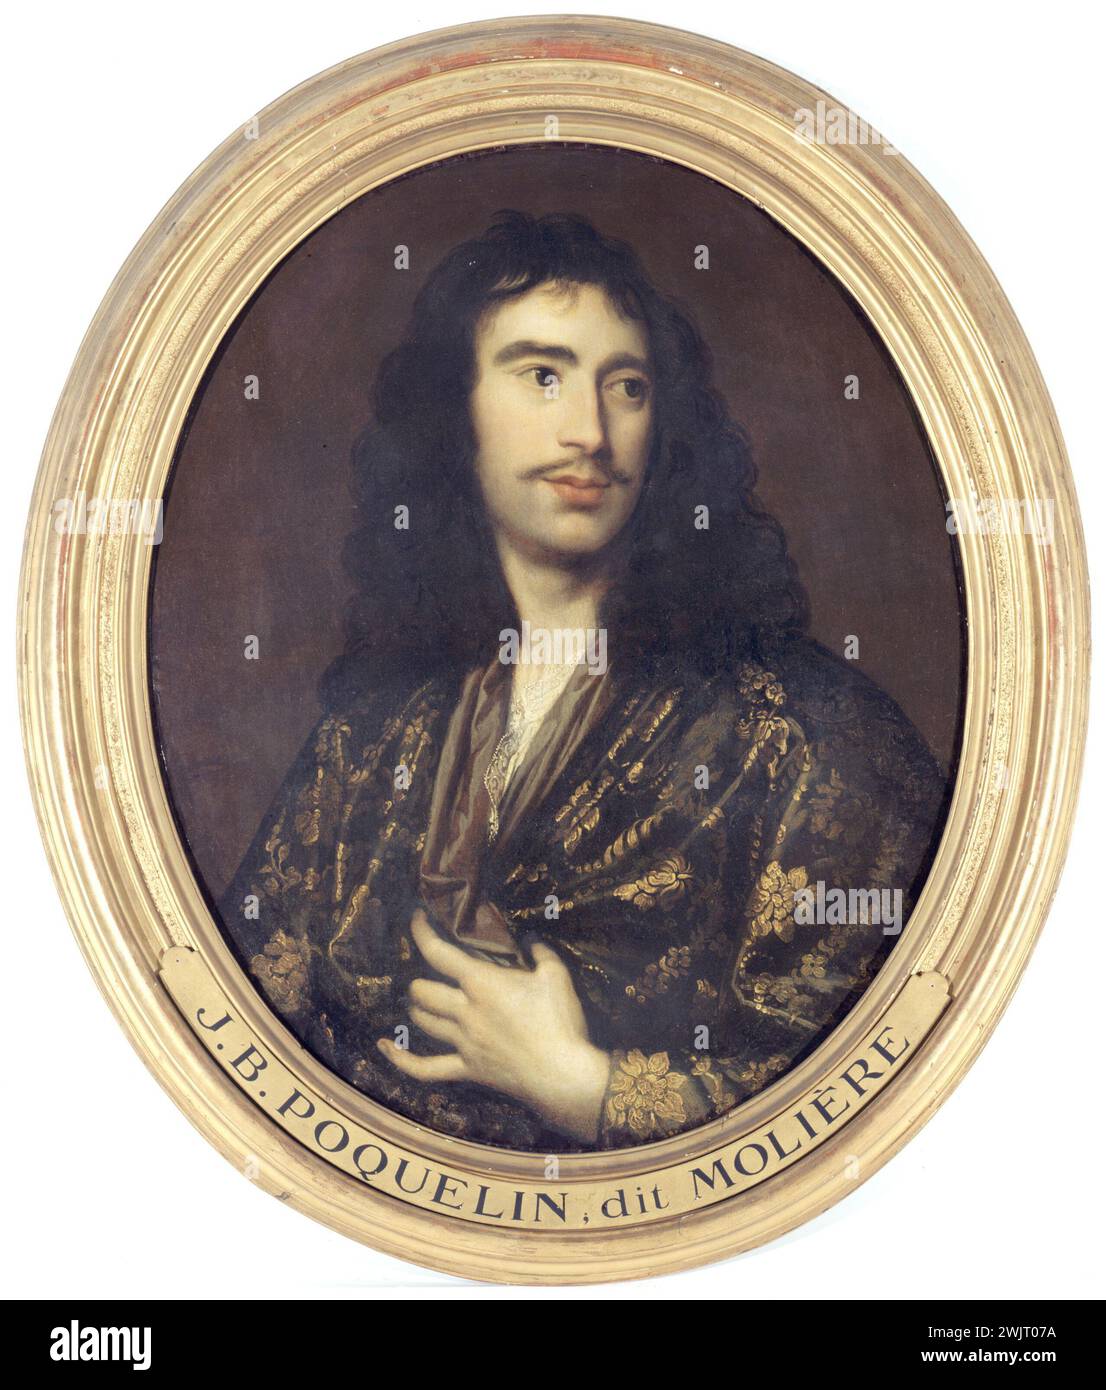 Ritratto di Molière (1622-1673), autore drammatico e attore. Olio su tela. Parigi, museo Carnavalet. 33464-11 attore, autore drammatico, comico, scrittore, francese, ritratto, olio su tela Foto Stock